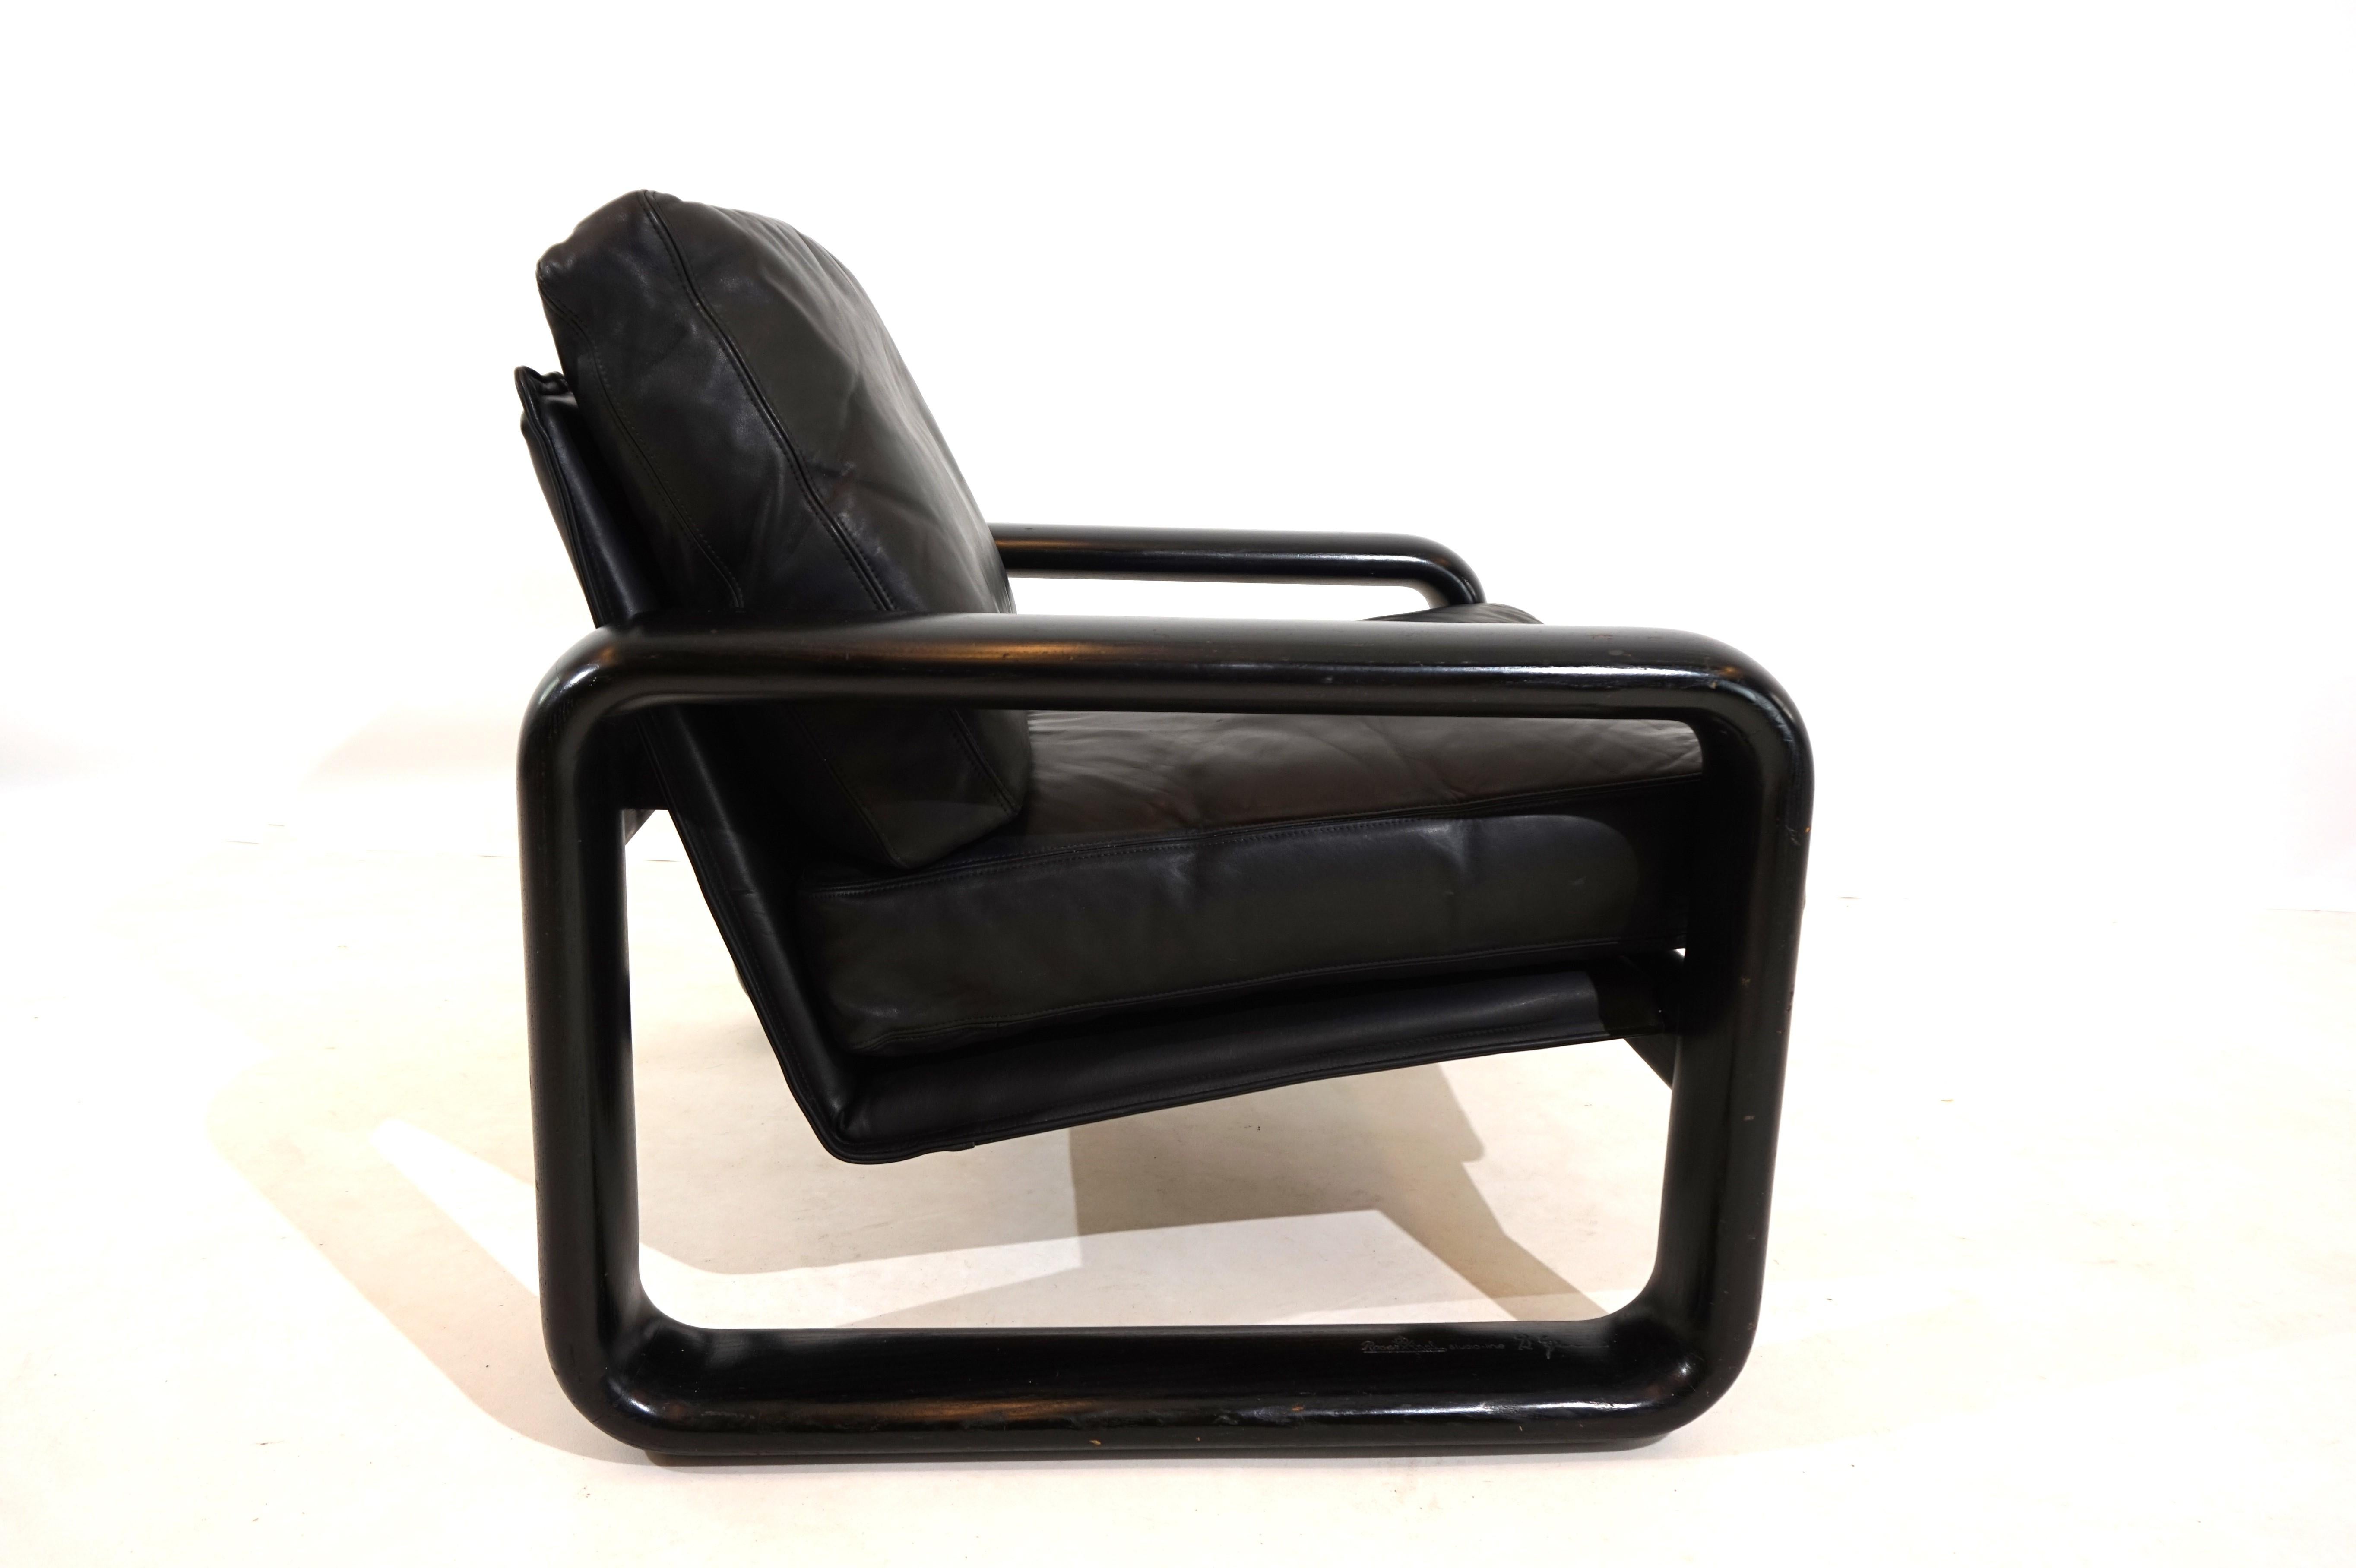 Un fauteuil en cuir Condit dans la version populaire avec un cadre en bois noir et du cuir noir en très bon état. Le cuir des coussins et du dossier ne présente pratiquement aucune trace d'usure et est doux et souple. Les dossiers en bois massif